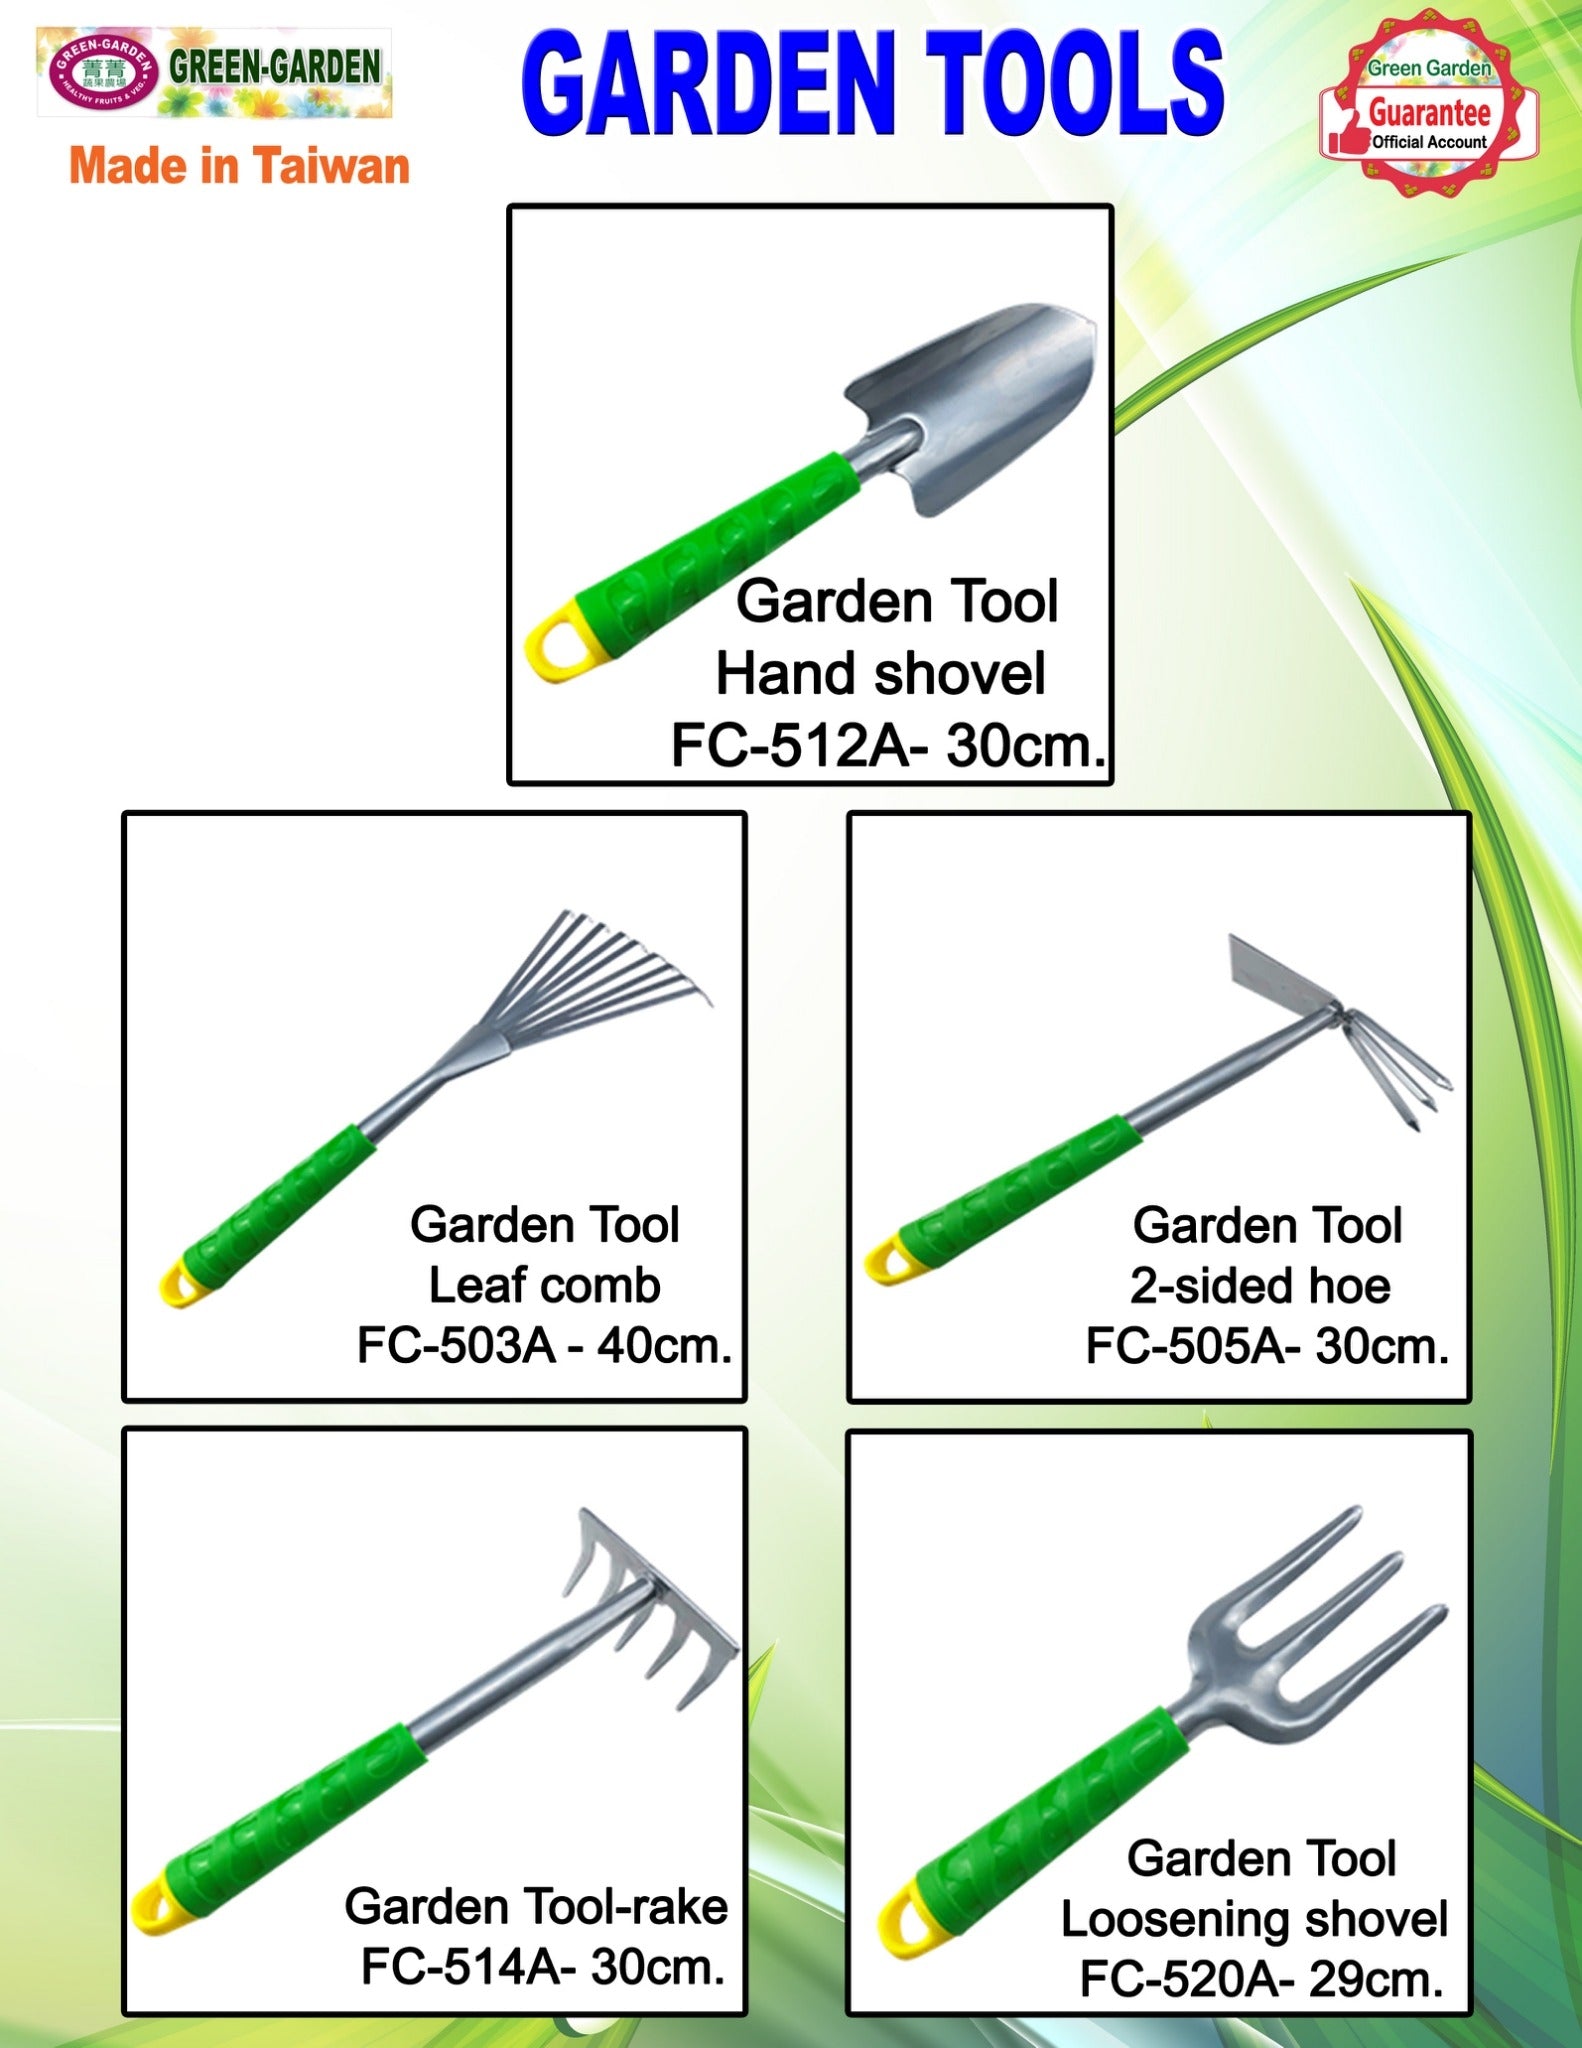 Garden Tool-2-sided Hoe